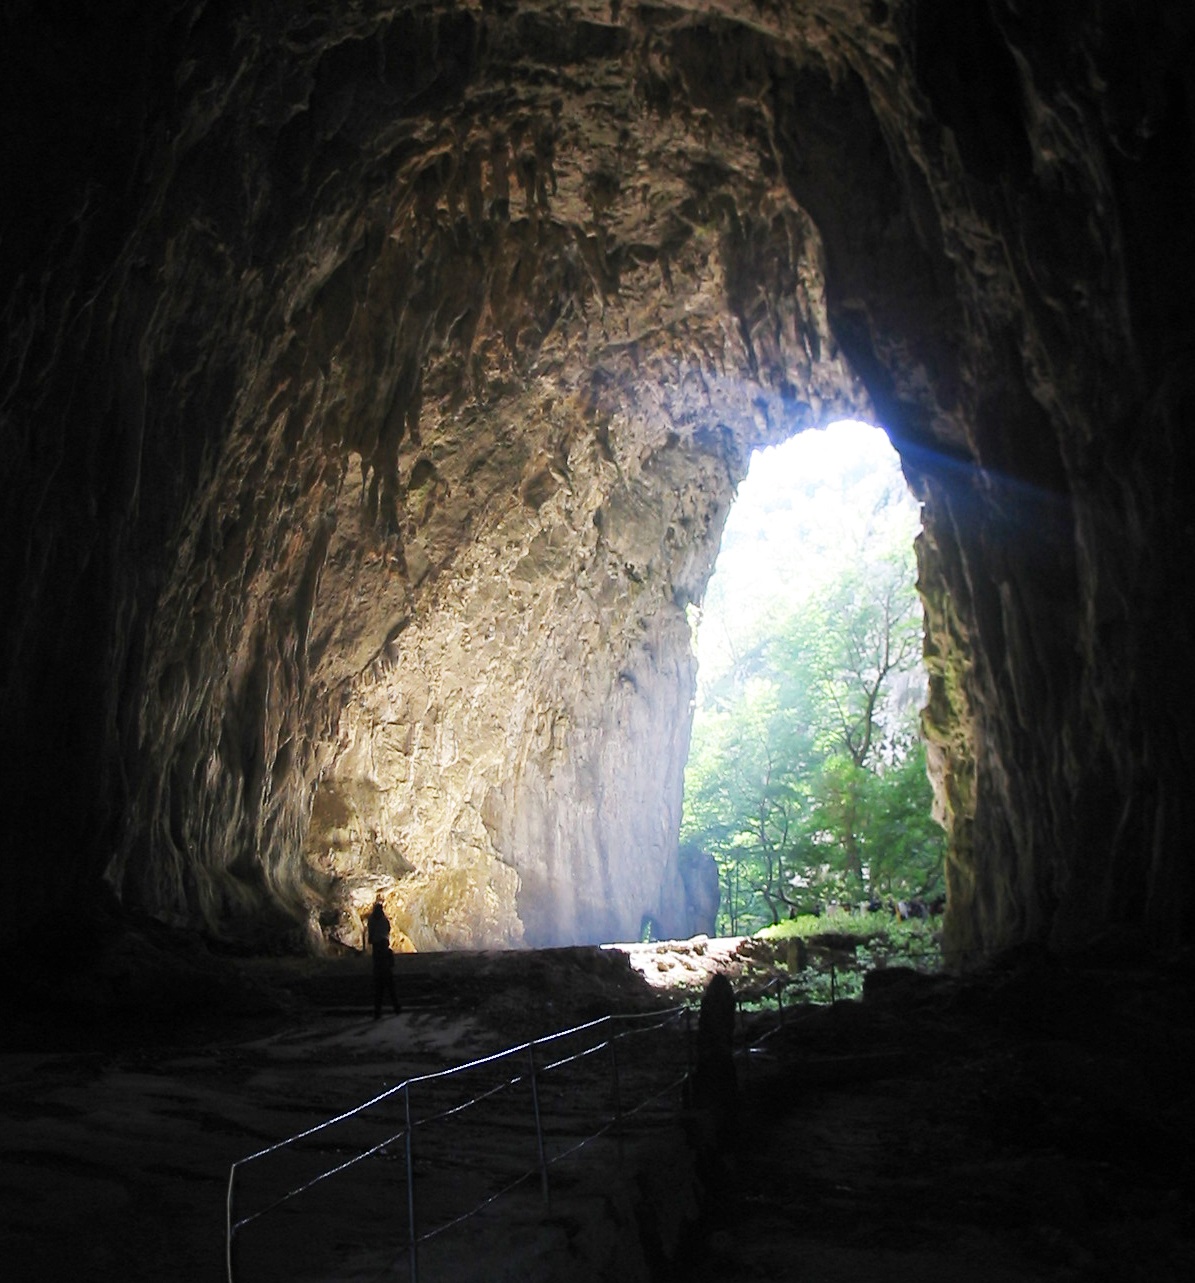 per Rad Slowenien erkunden - die Skocjan Grotte ist ein Besuch wert